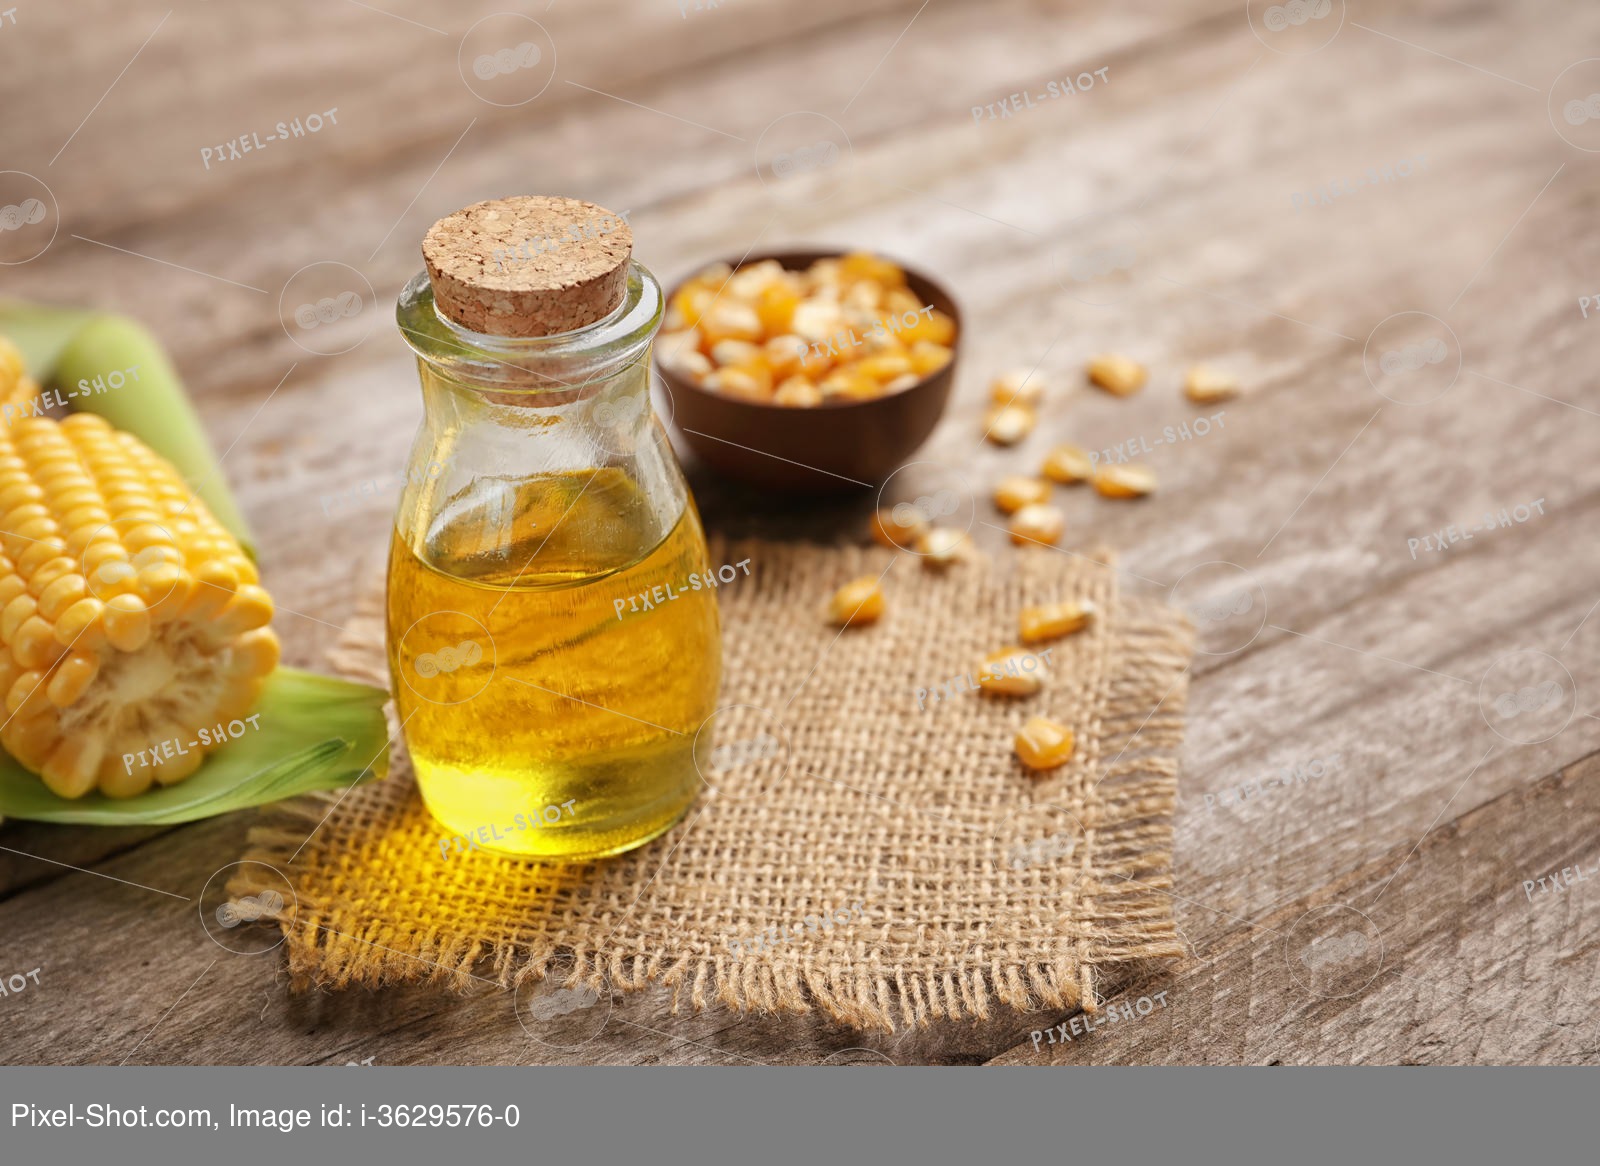 Кукурузное масло: польза и вред для здоровья человека